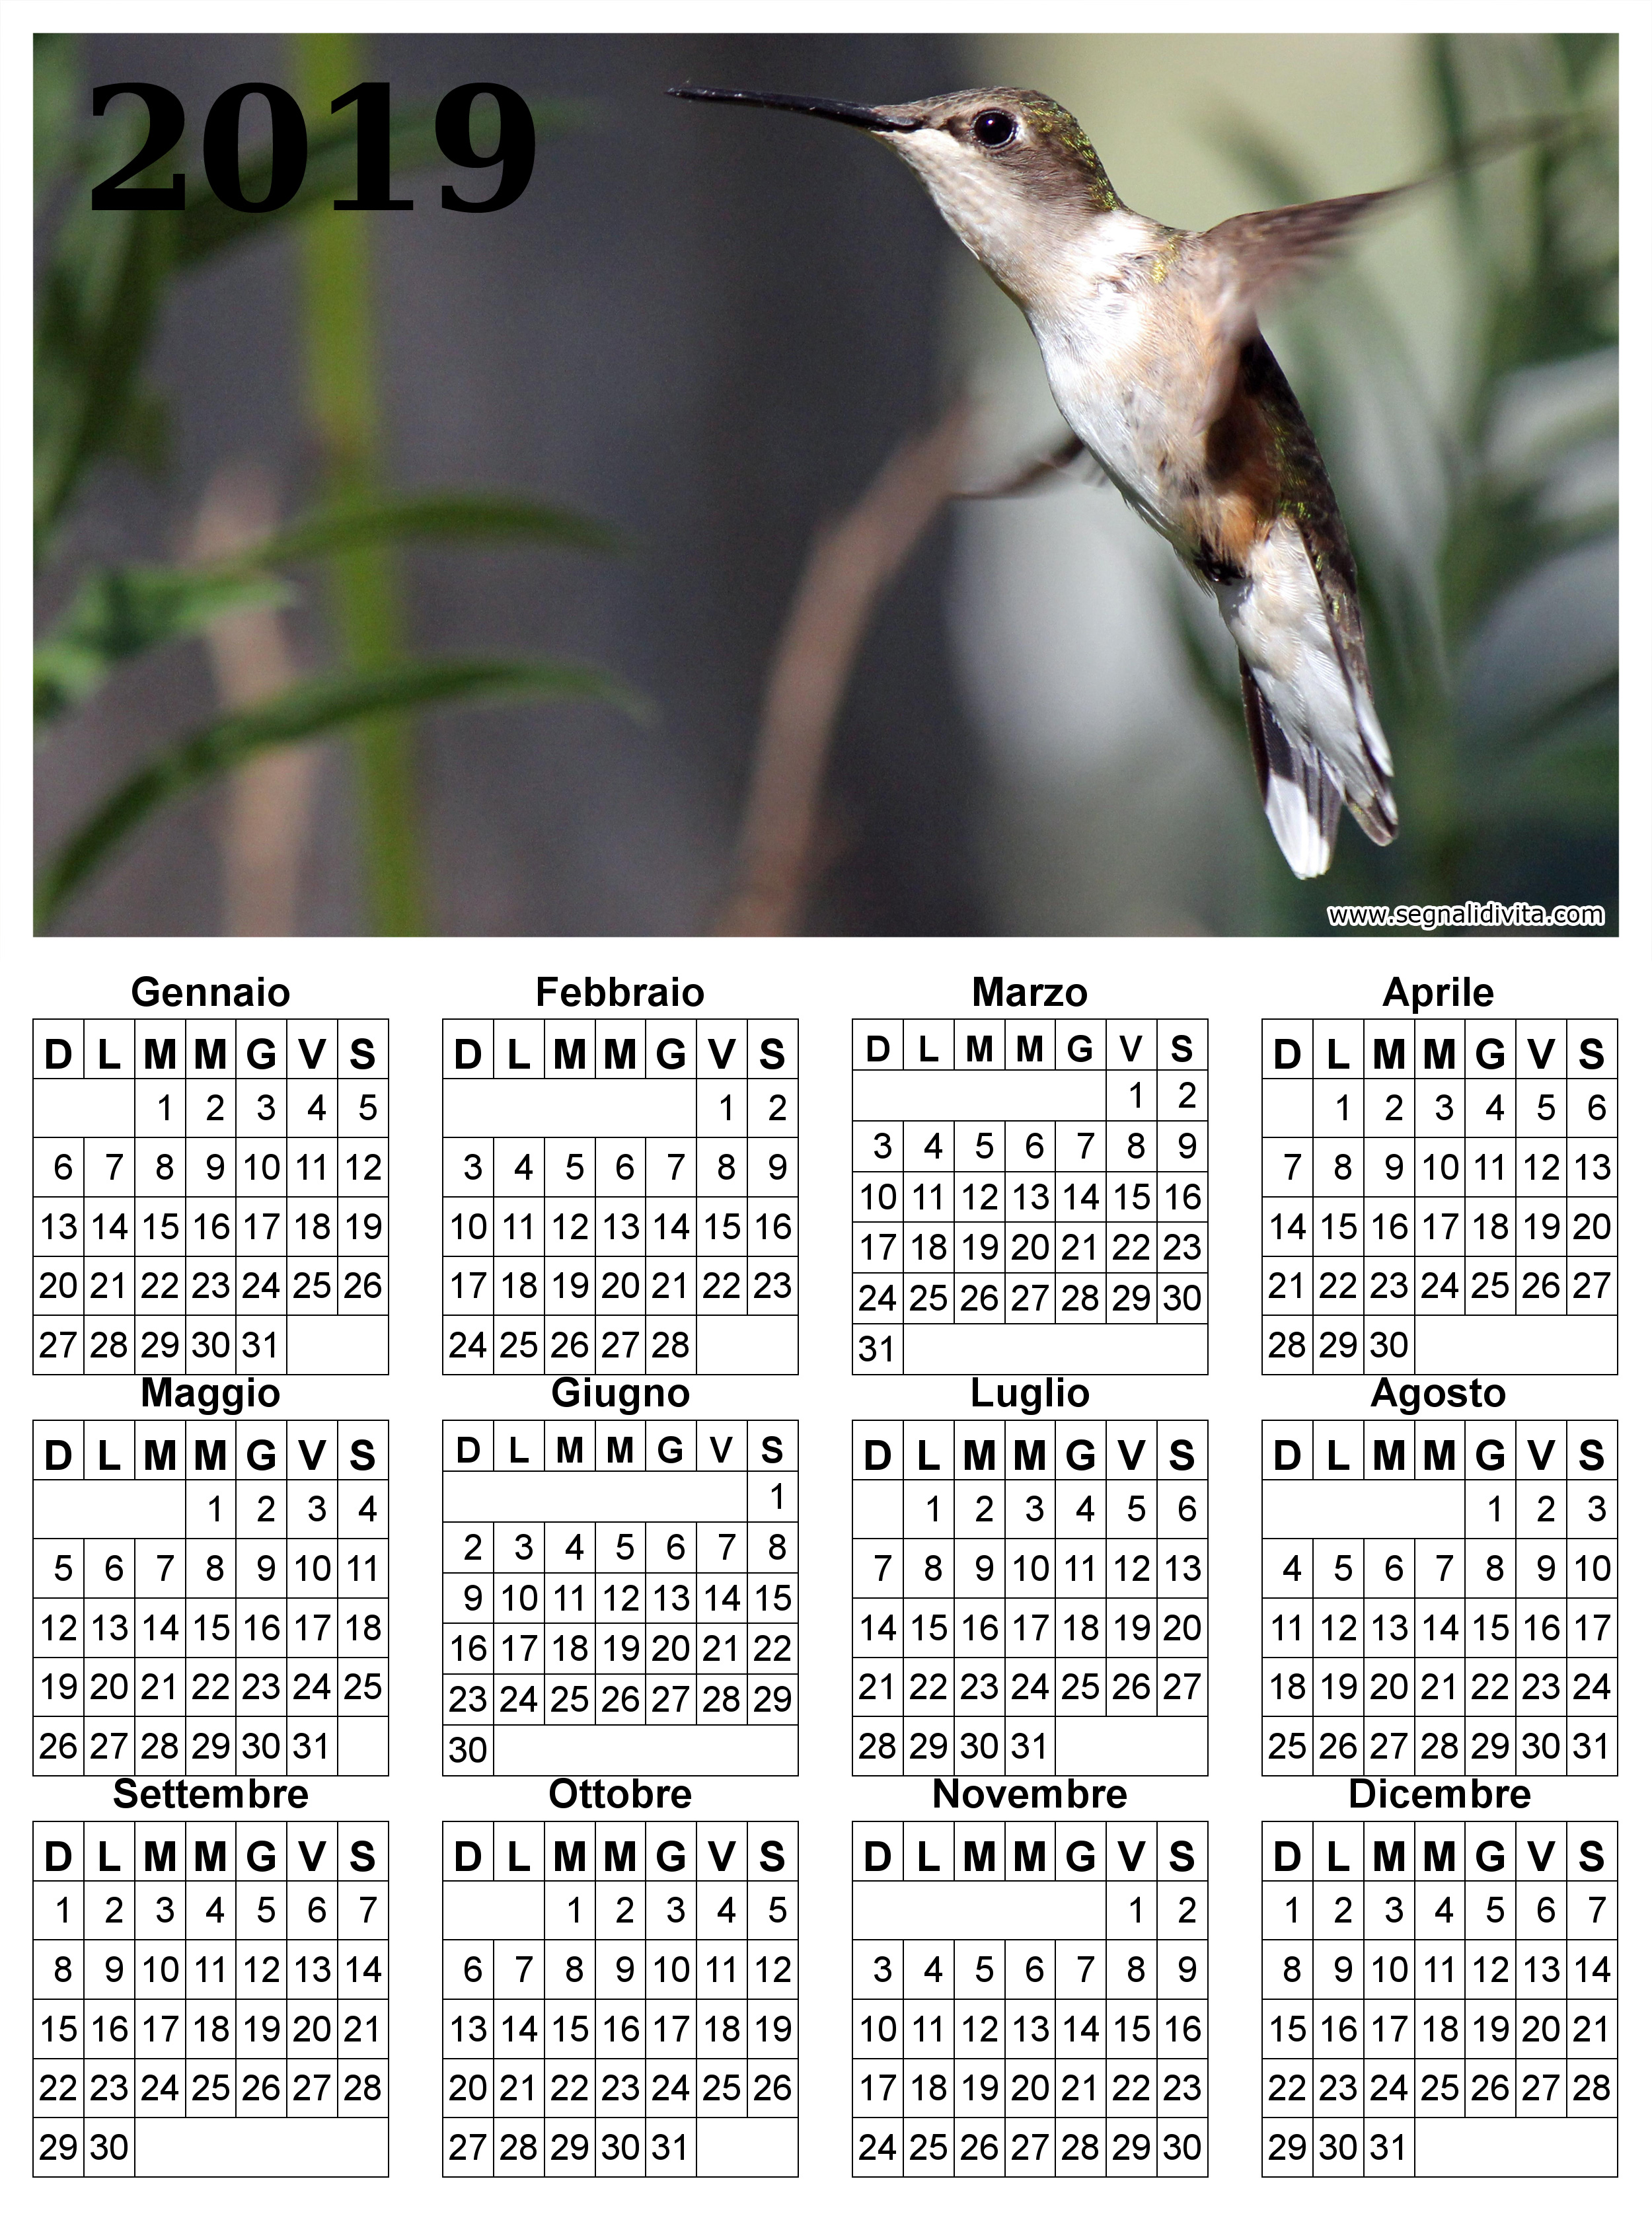 Calendario con colibri del 2019